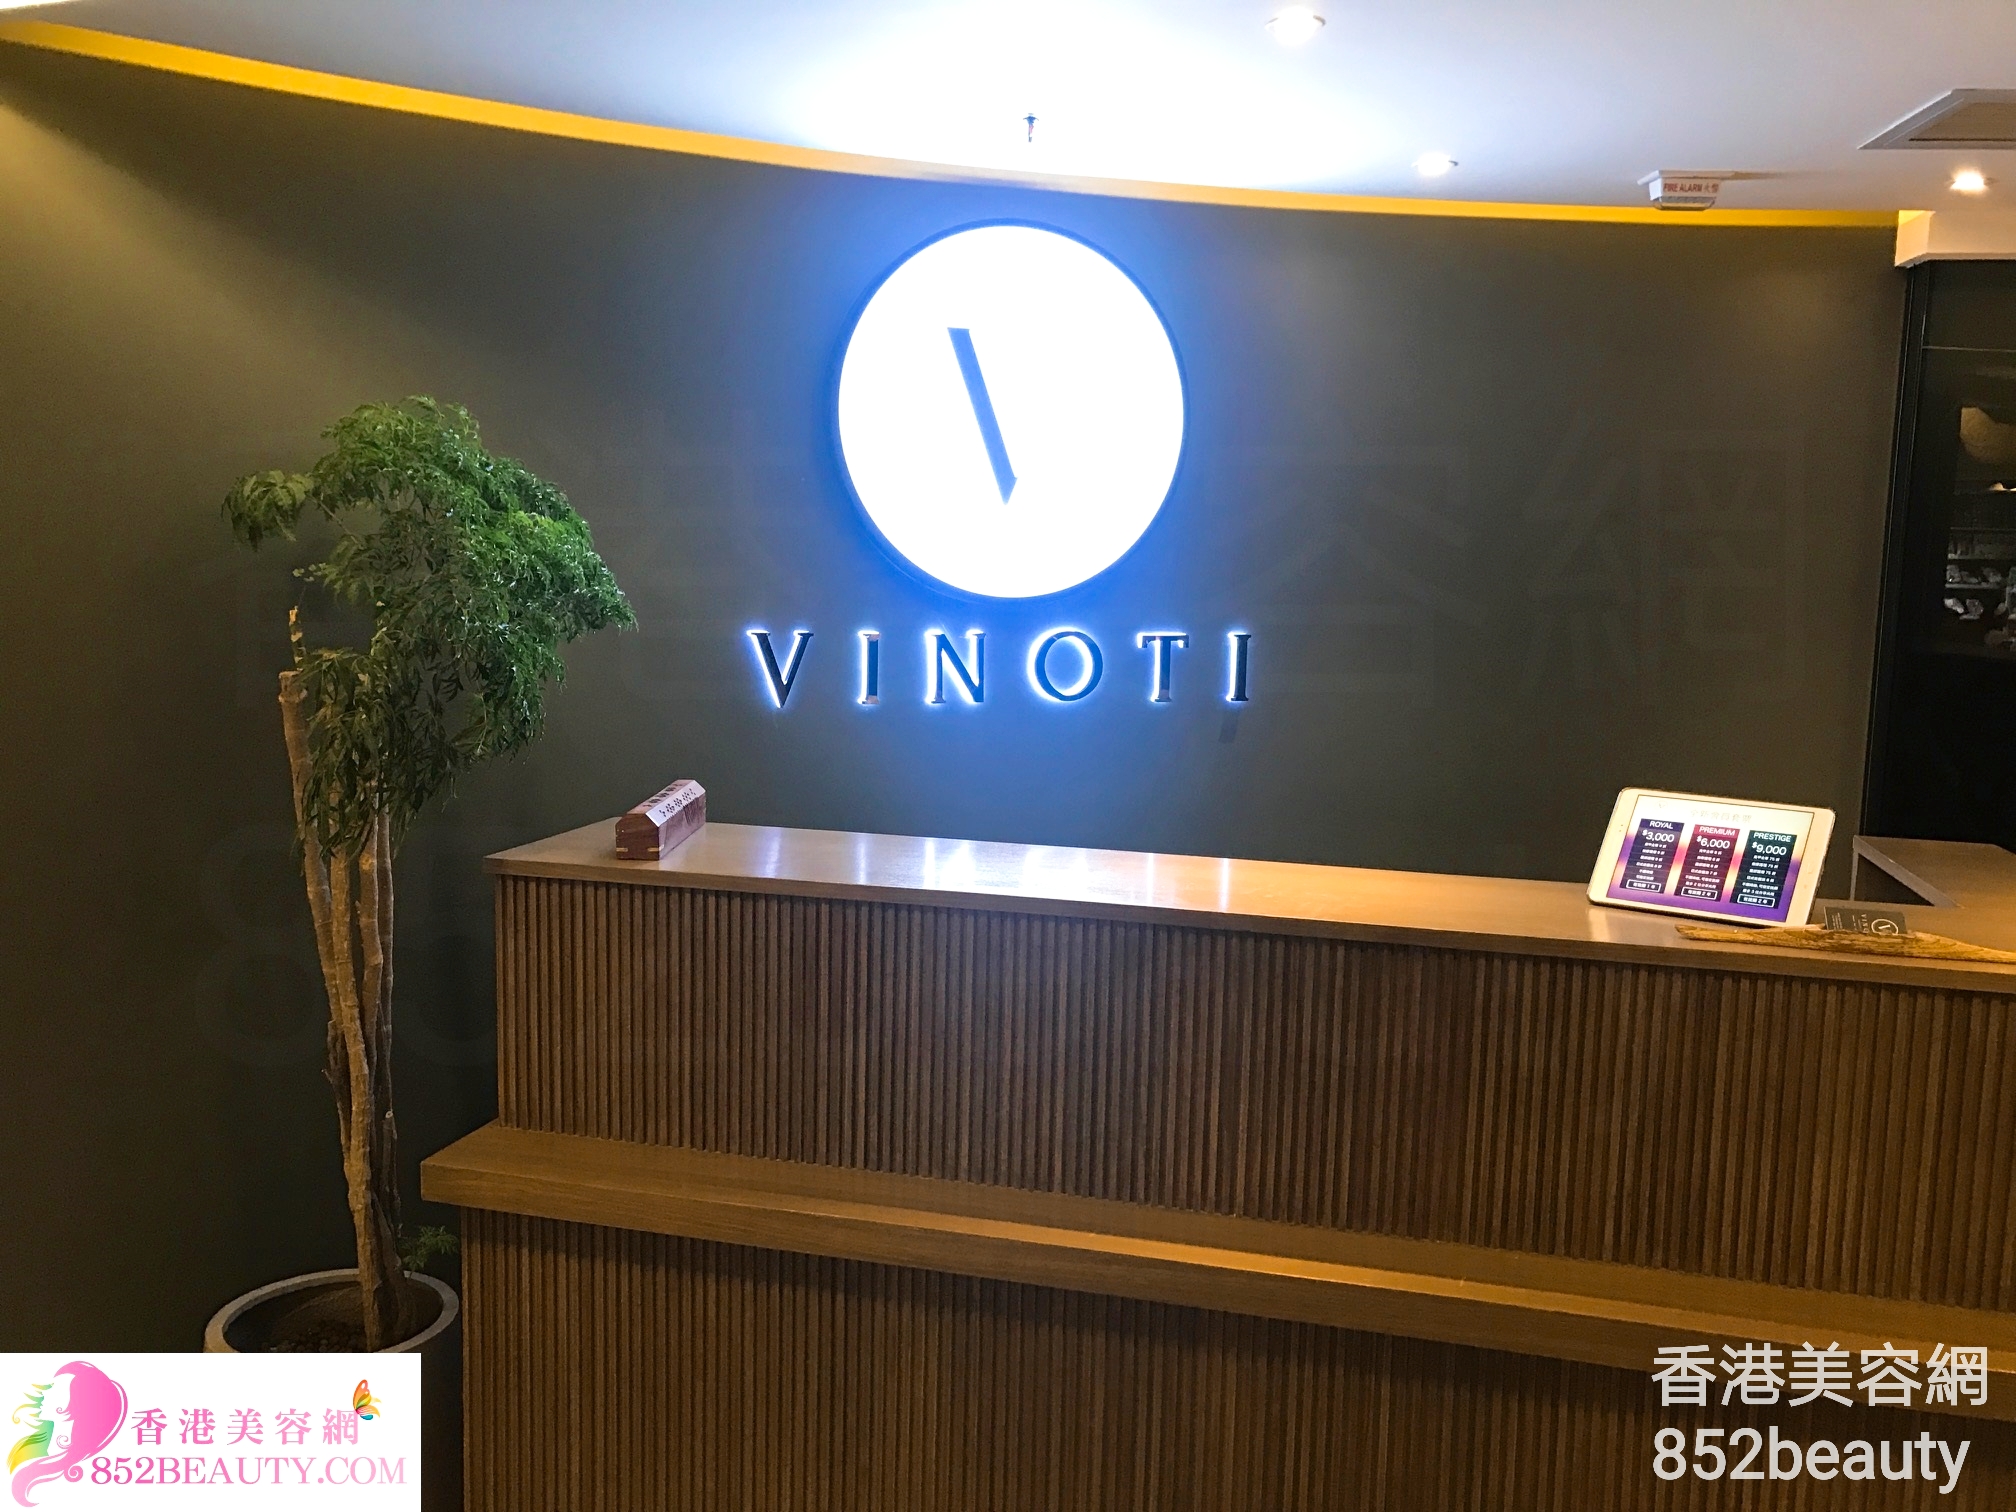 面部护理: Vinoti Beauty Lab